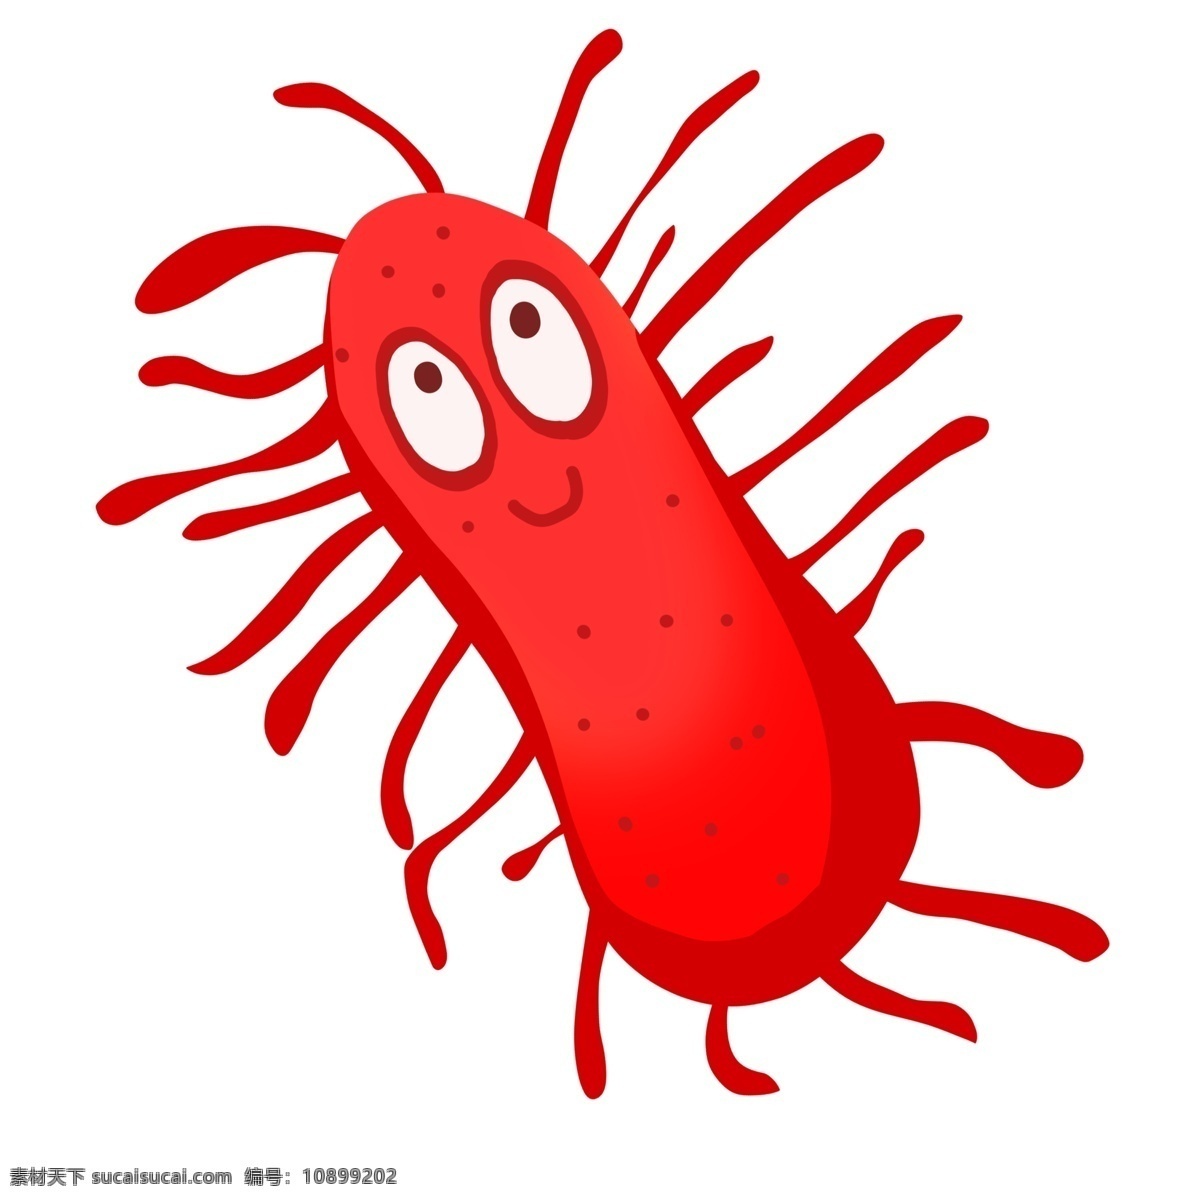 红色 有害 细菌 插画 红色的细菌 卡通插画 有害细菌 细菌插画 病菌插画 病菌细菌 毛毛虫细菌